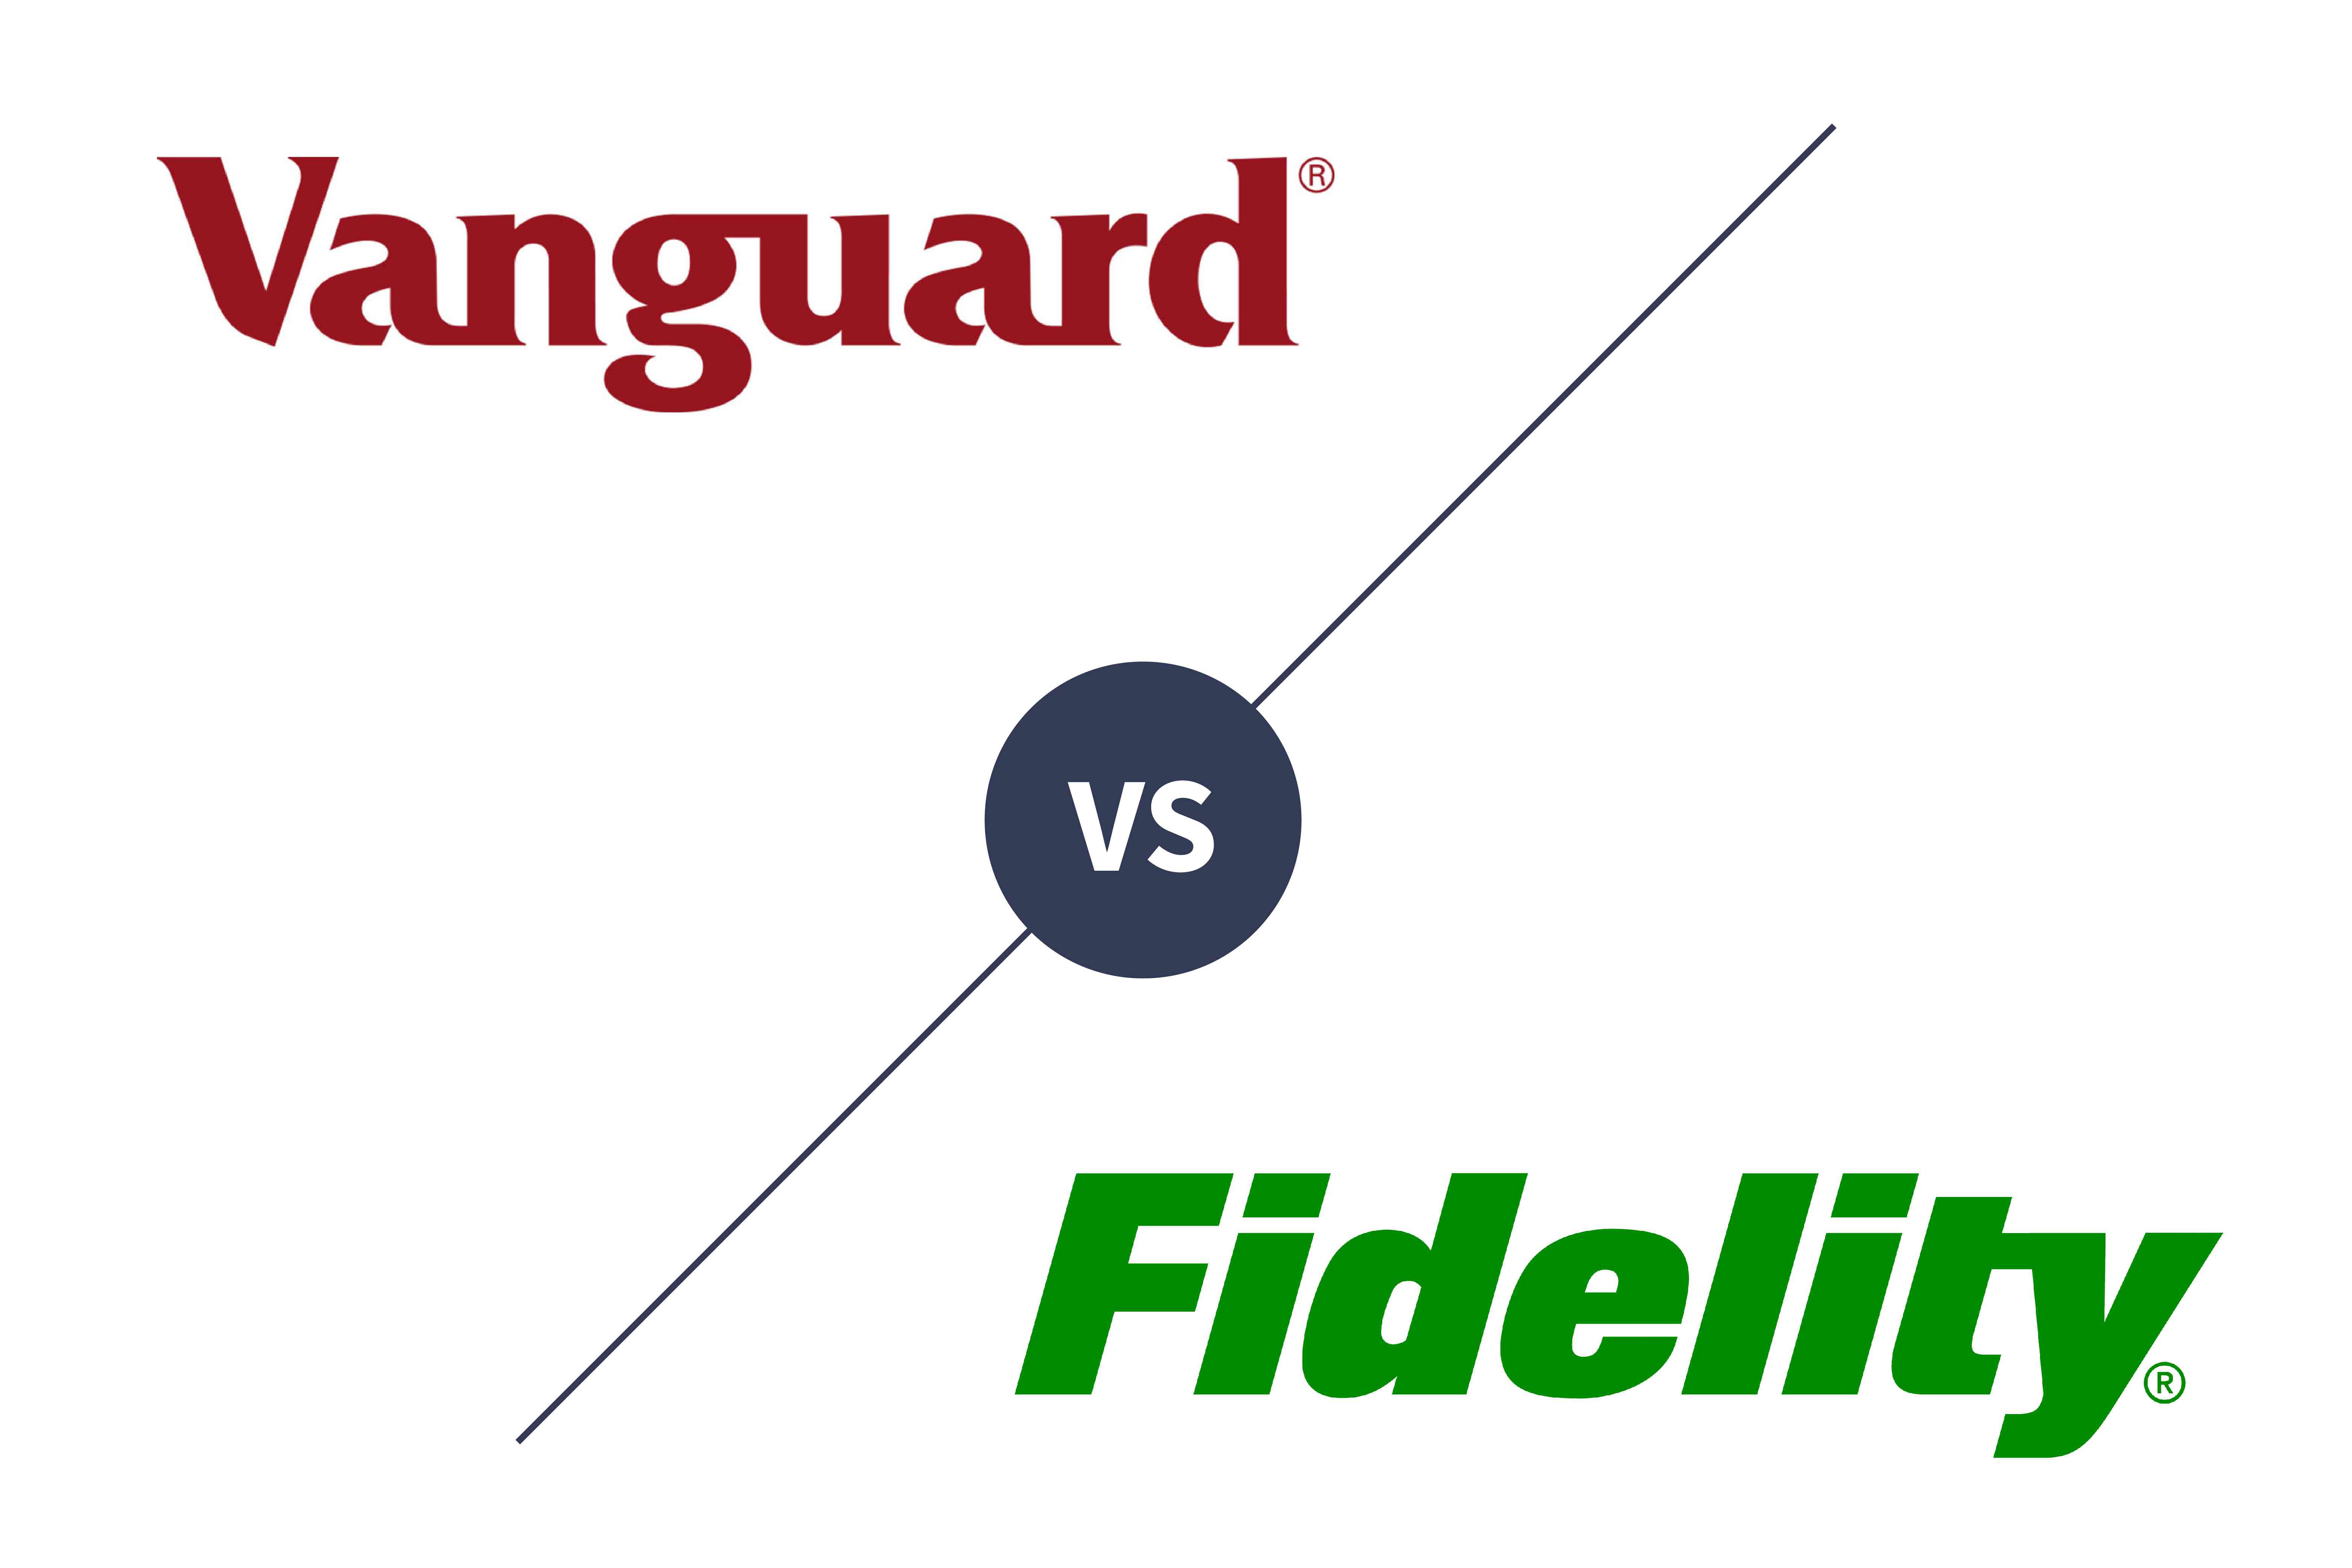 Vanguard vs Fidelity